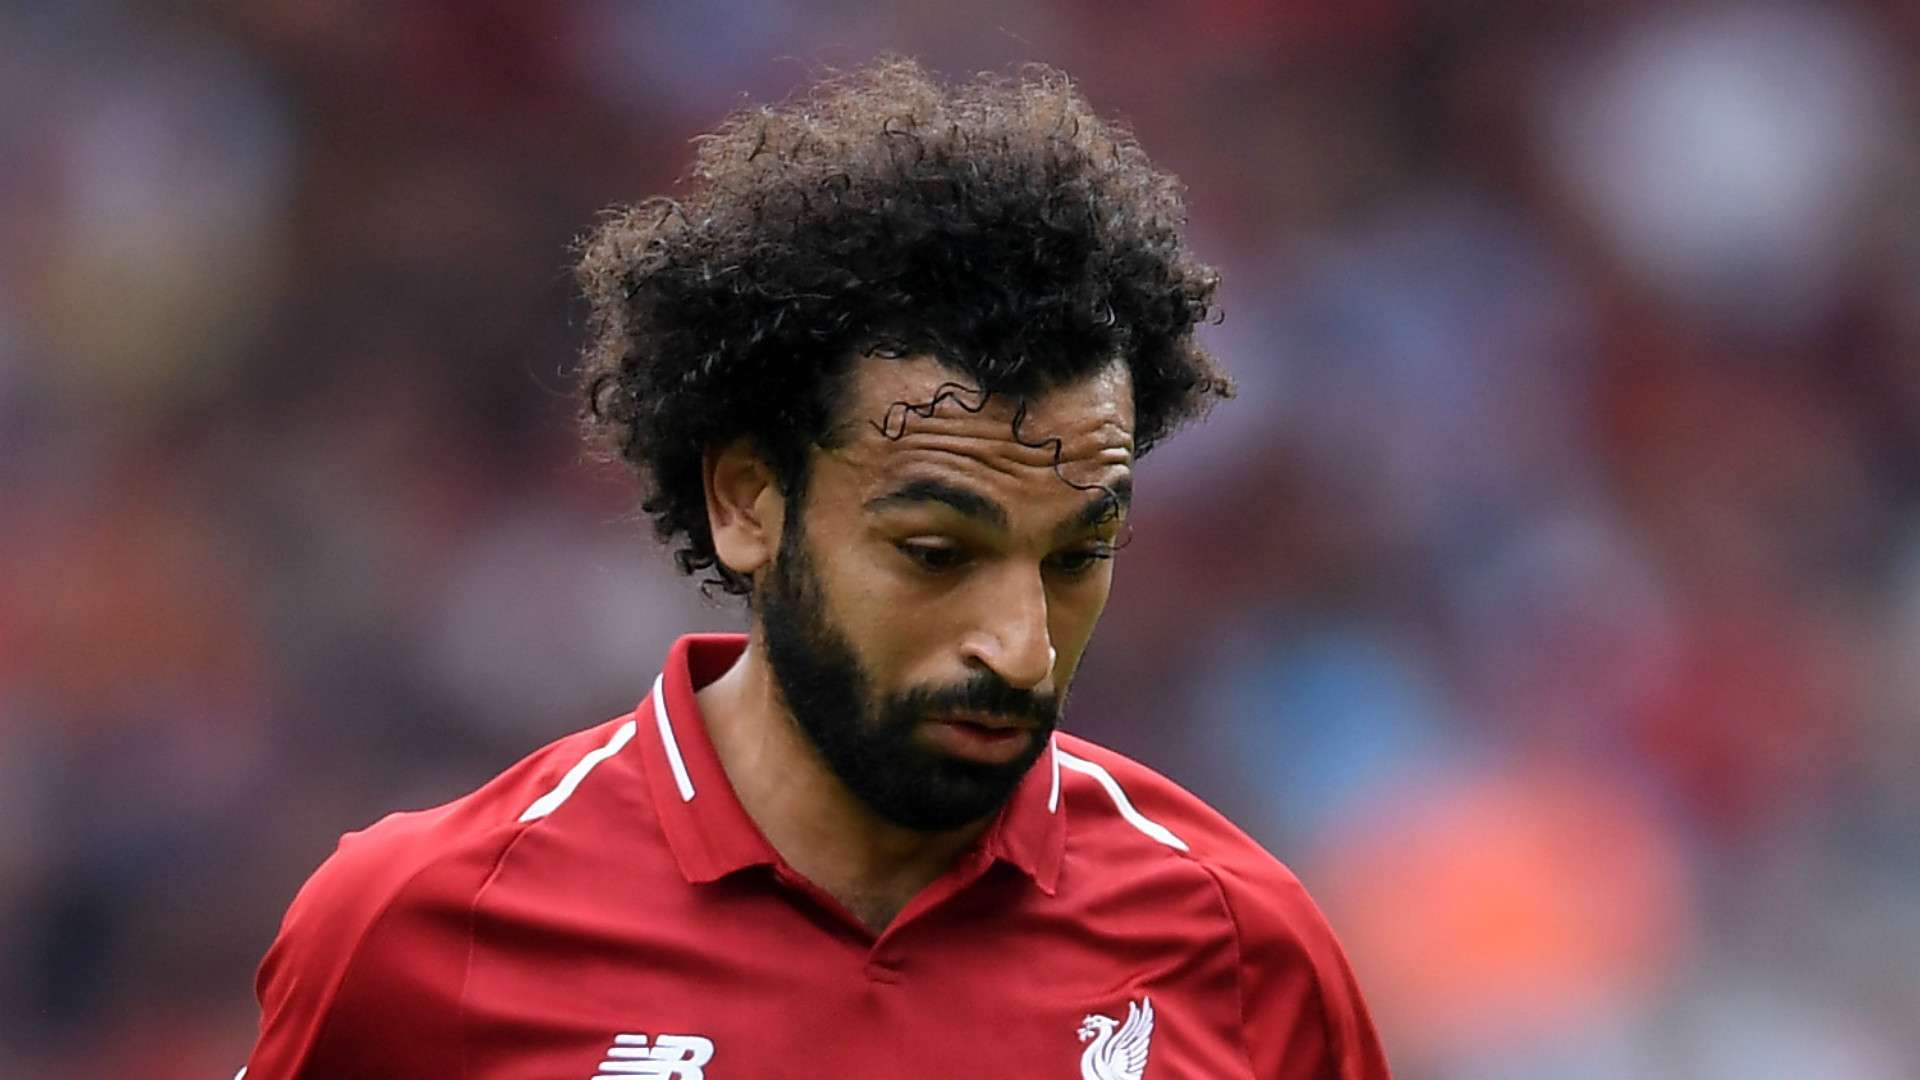 Mohamed Salah Liverpool 2018-19